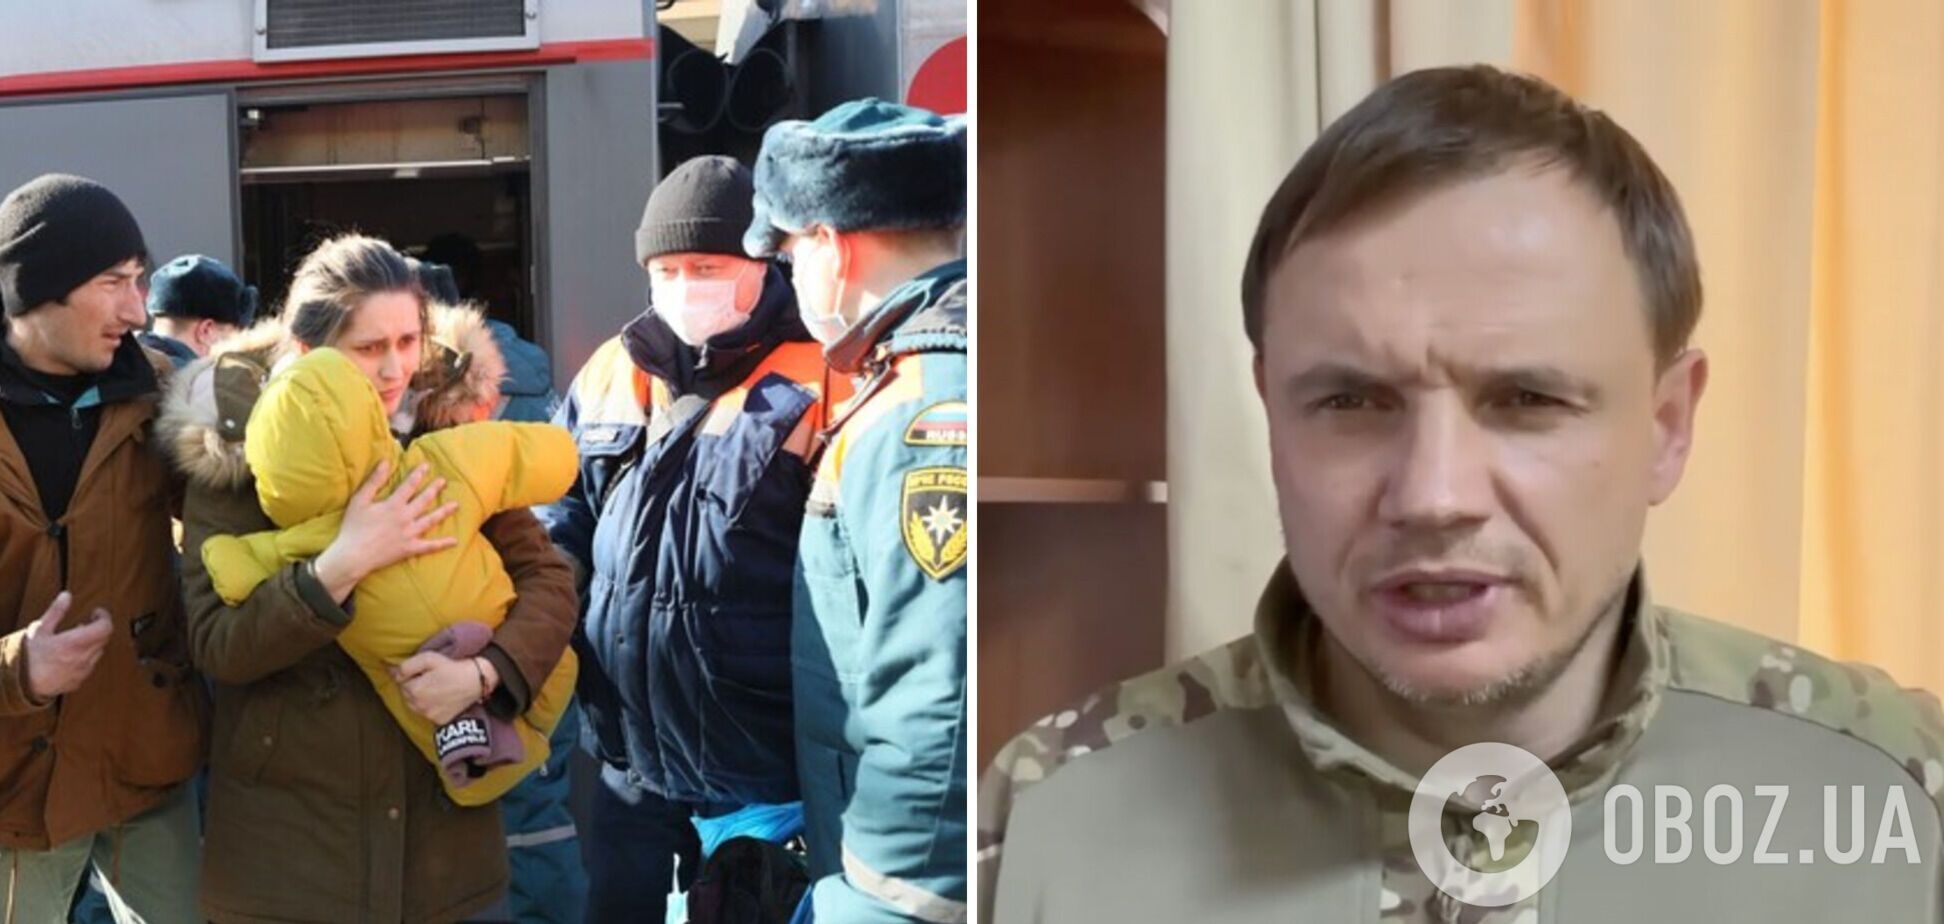 Гауляйтер Стремоусов объявил о завершении организованной депортации украинцев из Херсона: город ждут трудные времена. Видео